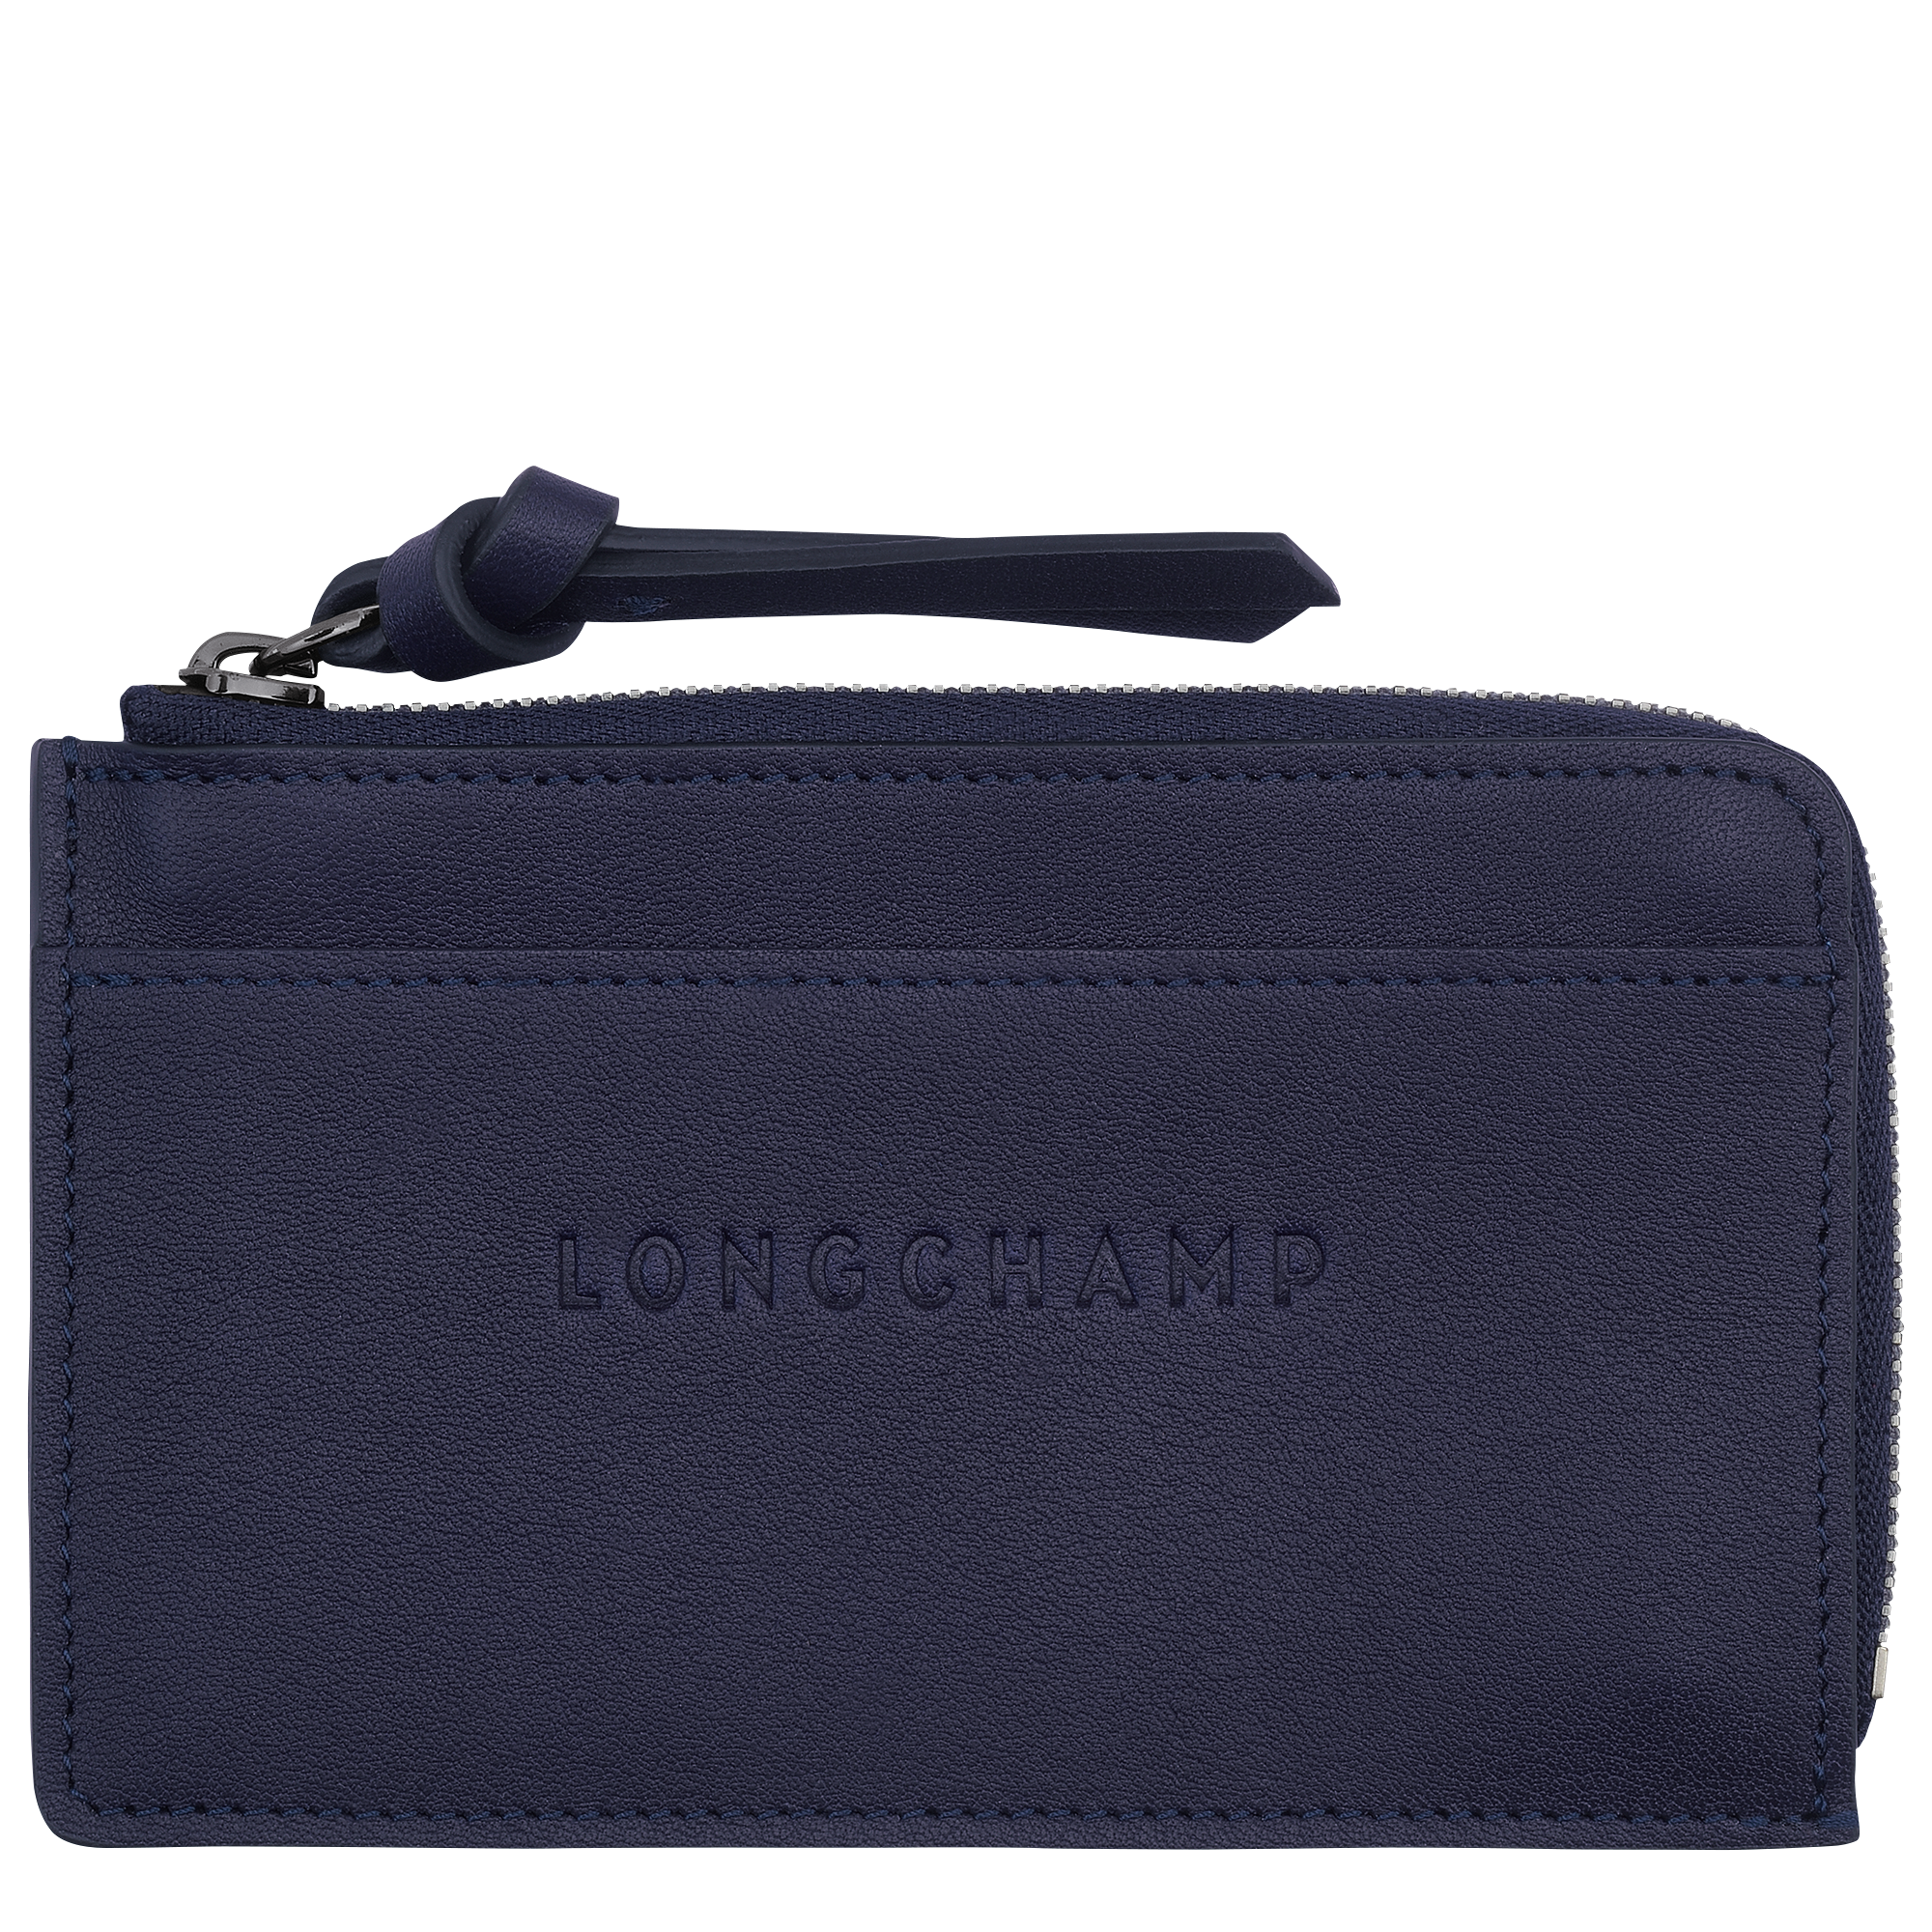 Longchamp 3D Card holder, Bilberry